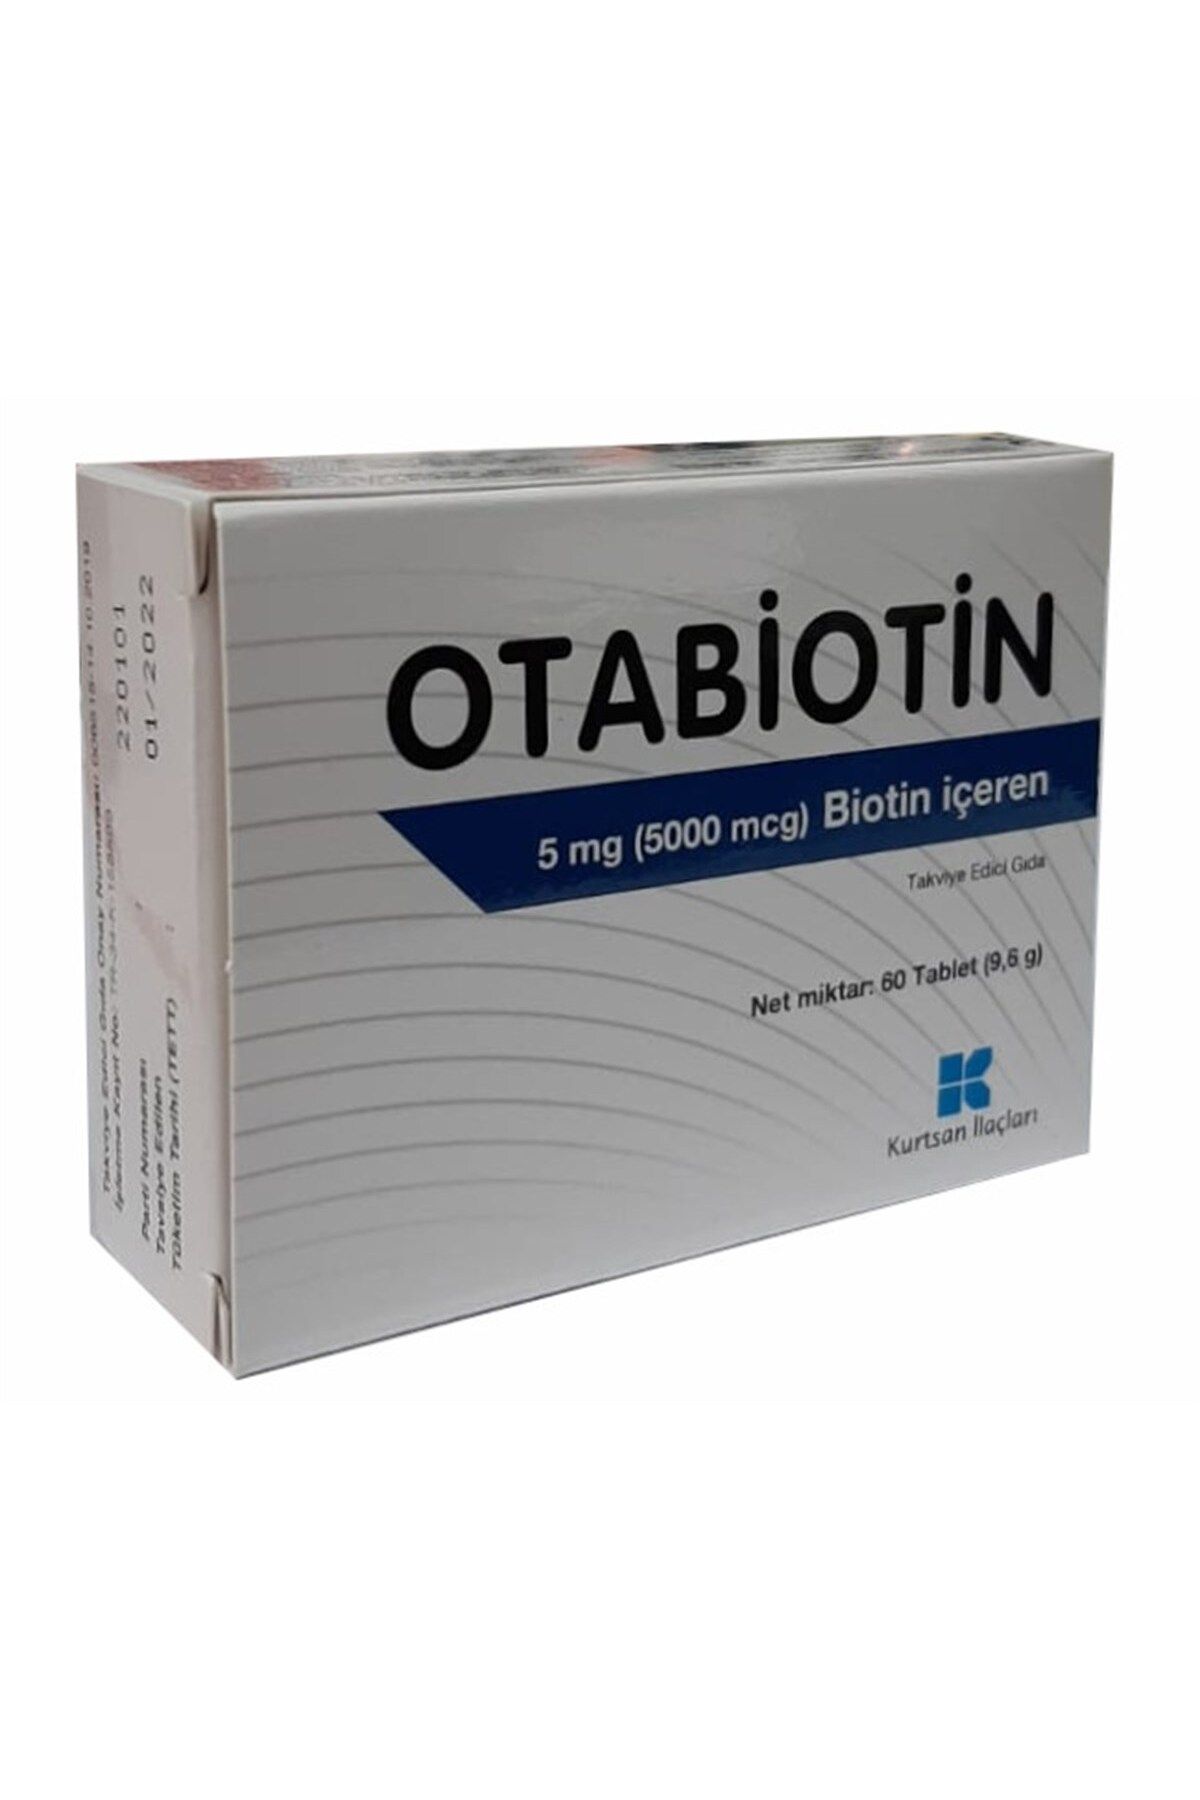 Kurtsan Otabiotin 5 Mg Biotin Içeren Takviye Edici Gıda 60 Tablet